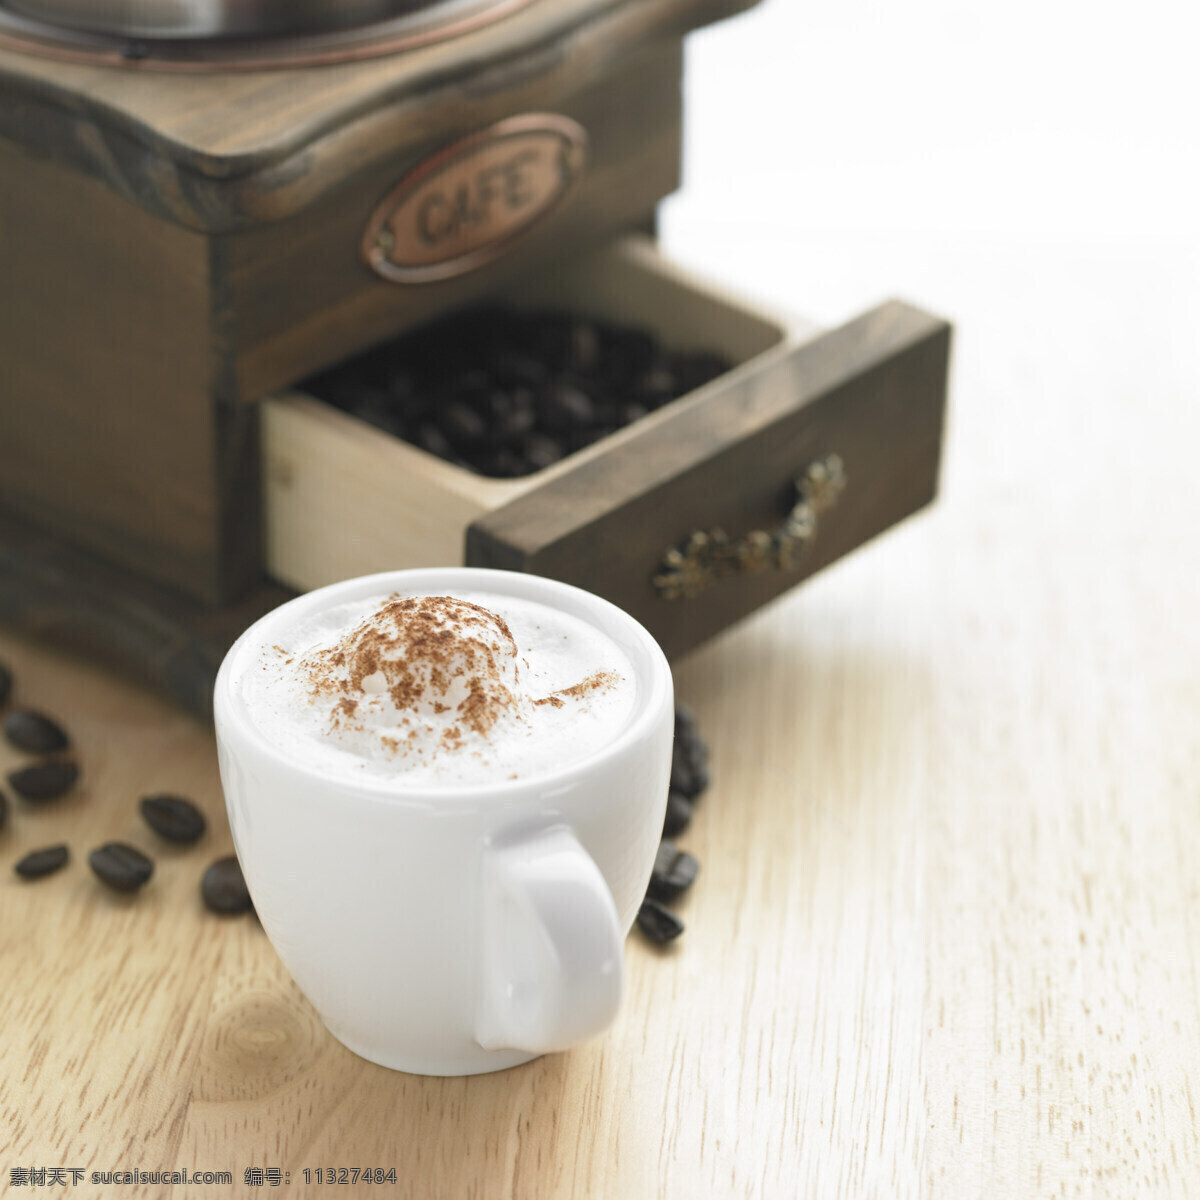 咖啡豆 咖啡 伴侣 特写 杯子 休闲 品味 享受生活 高档 摄影图 高清图片 咖啡图片 餐饮美食